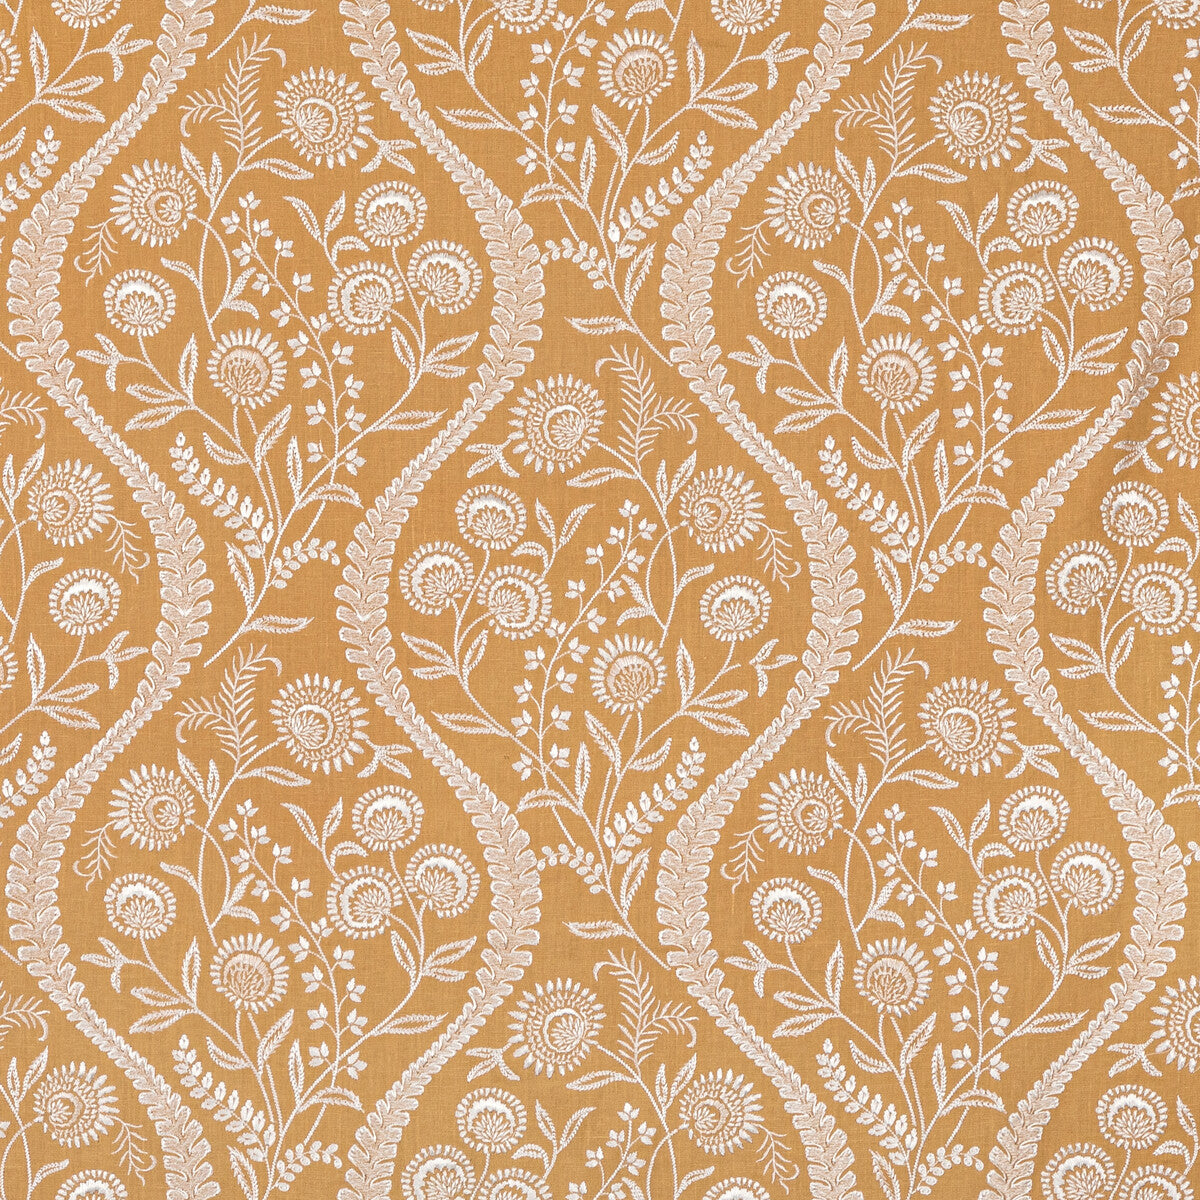 Floriblanca fabric in golden color - pattern 2020219.4.0 - by Lee Jofa in the Oscar De La Renta IV collection